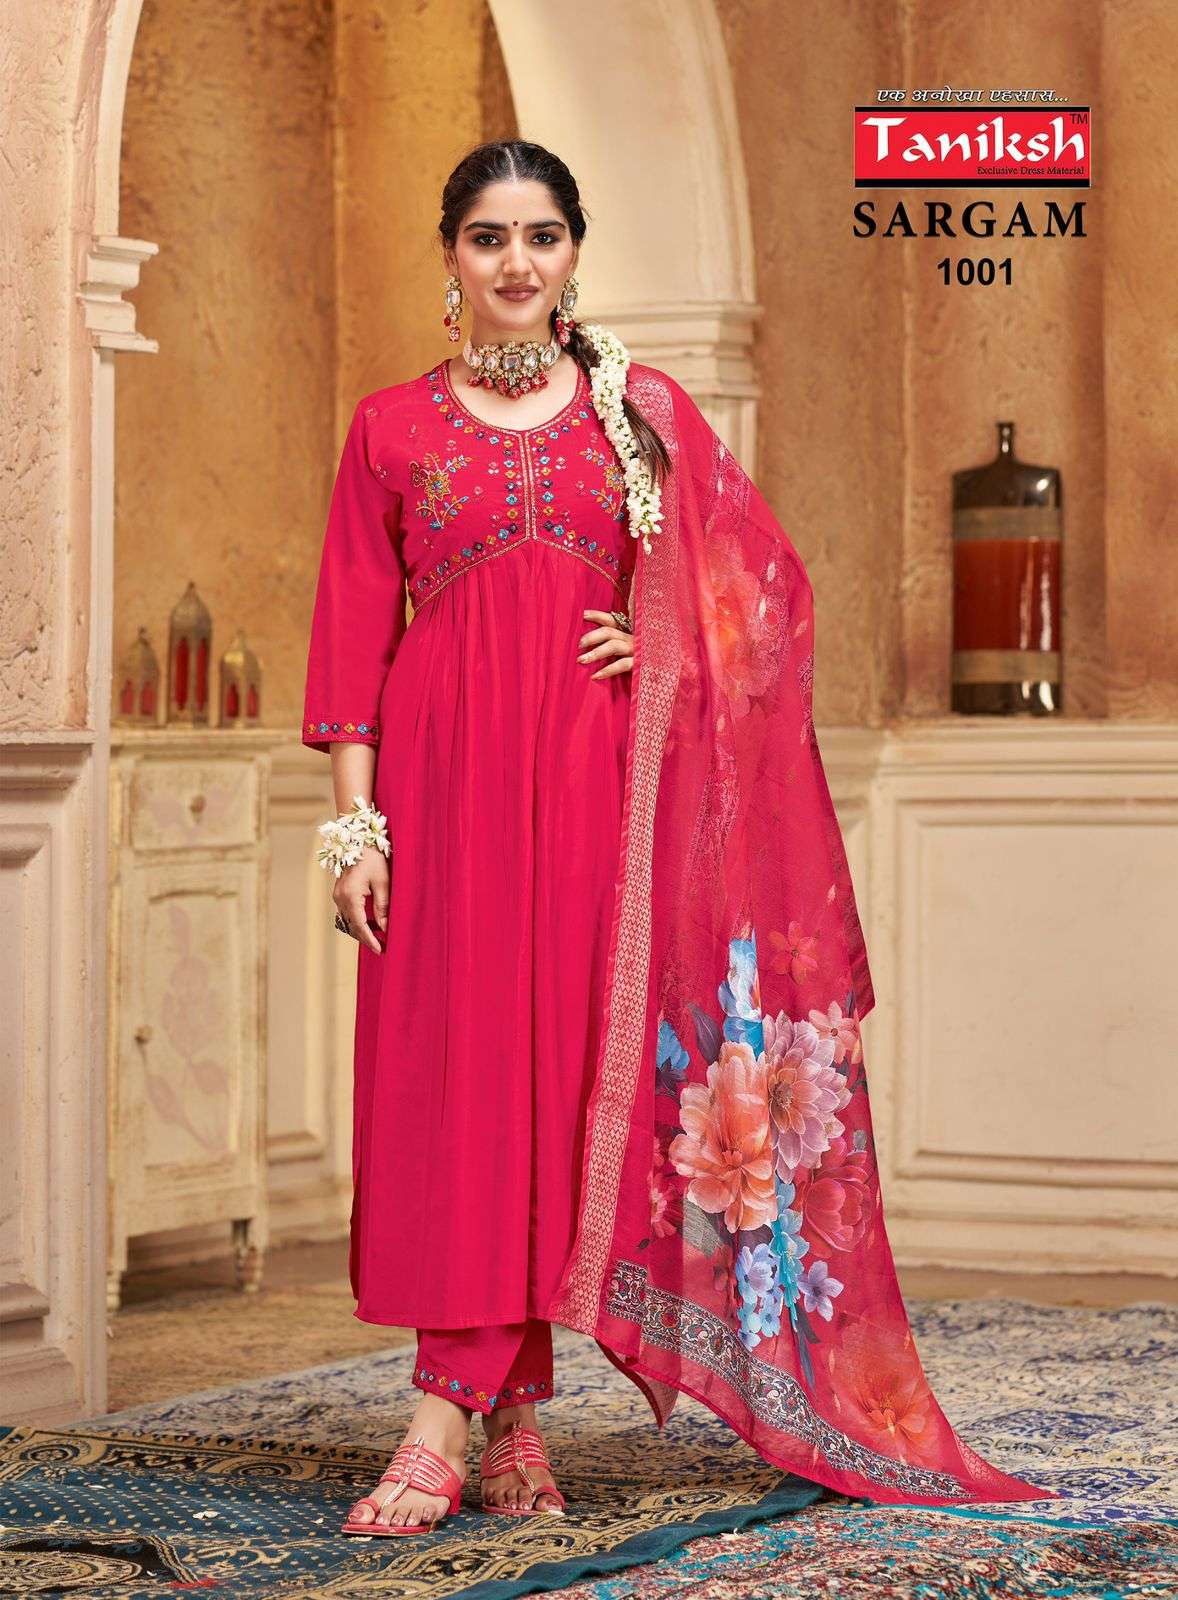 sargam vol-1 by taniksh 1001-1008 series aaliya cut designer kurtis wholesale price surat